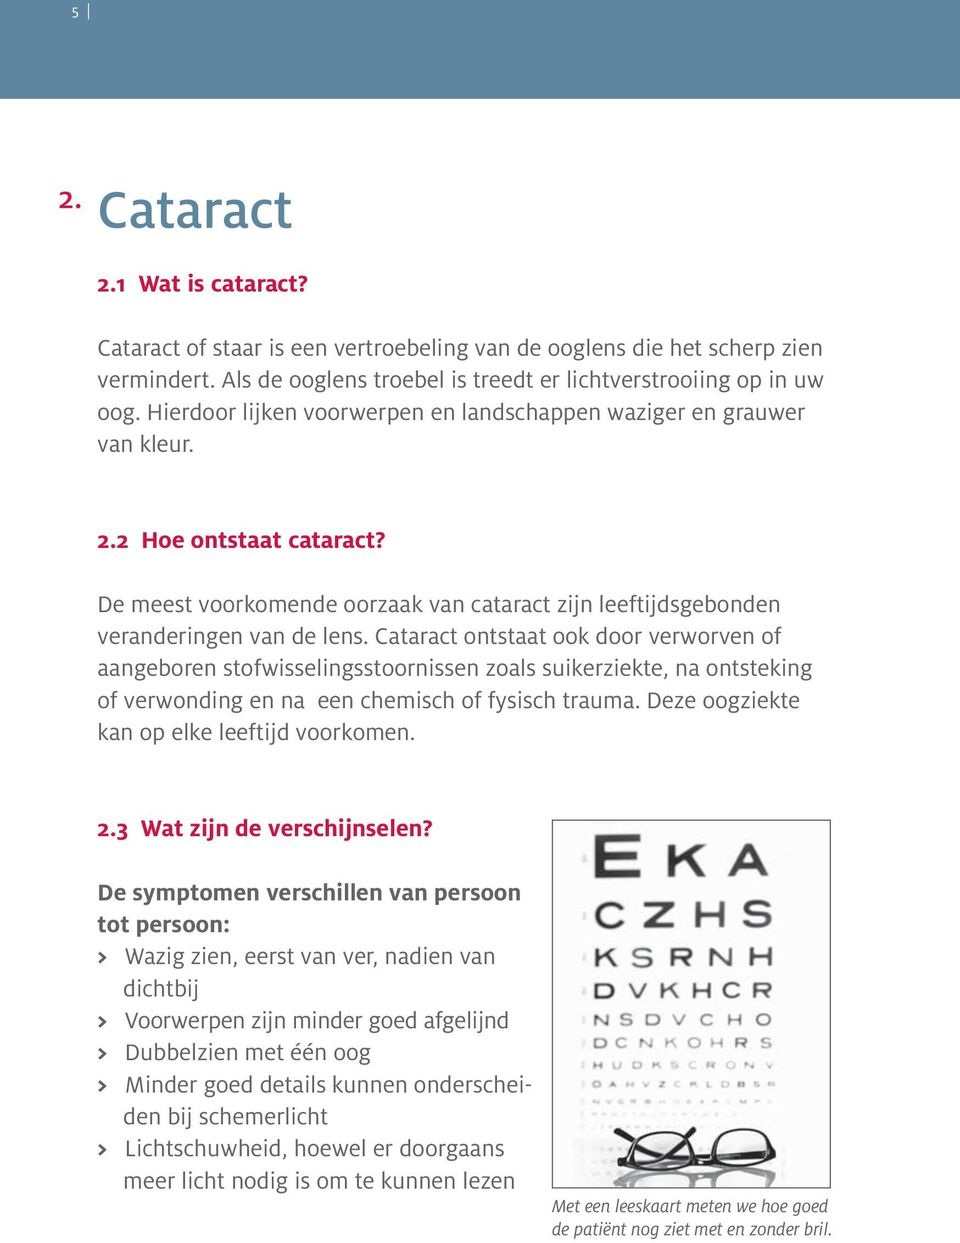 Cataract ontstaat ook door verworven of aangeboren stofwisselingsstoornissen zoals suikerziekte, na ontsteking of verwonding en na een chemisch of fysisch trauma.